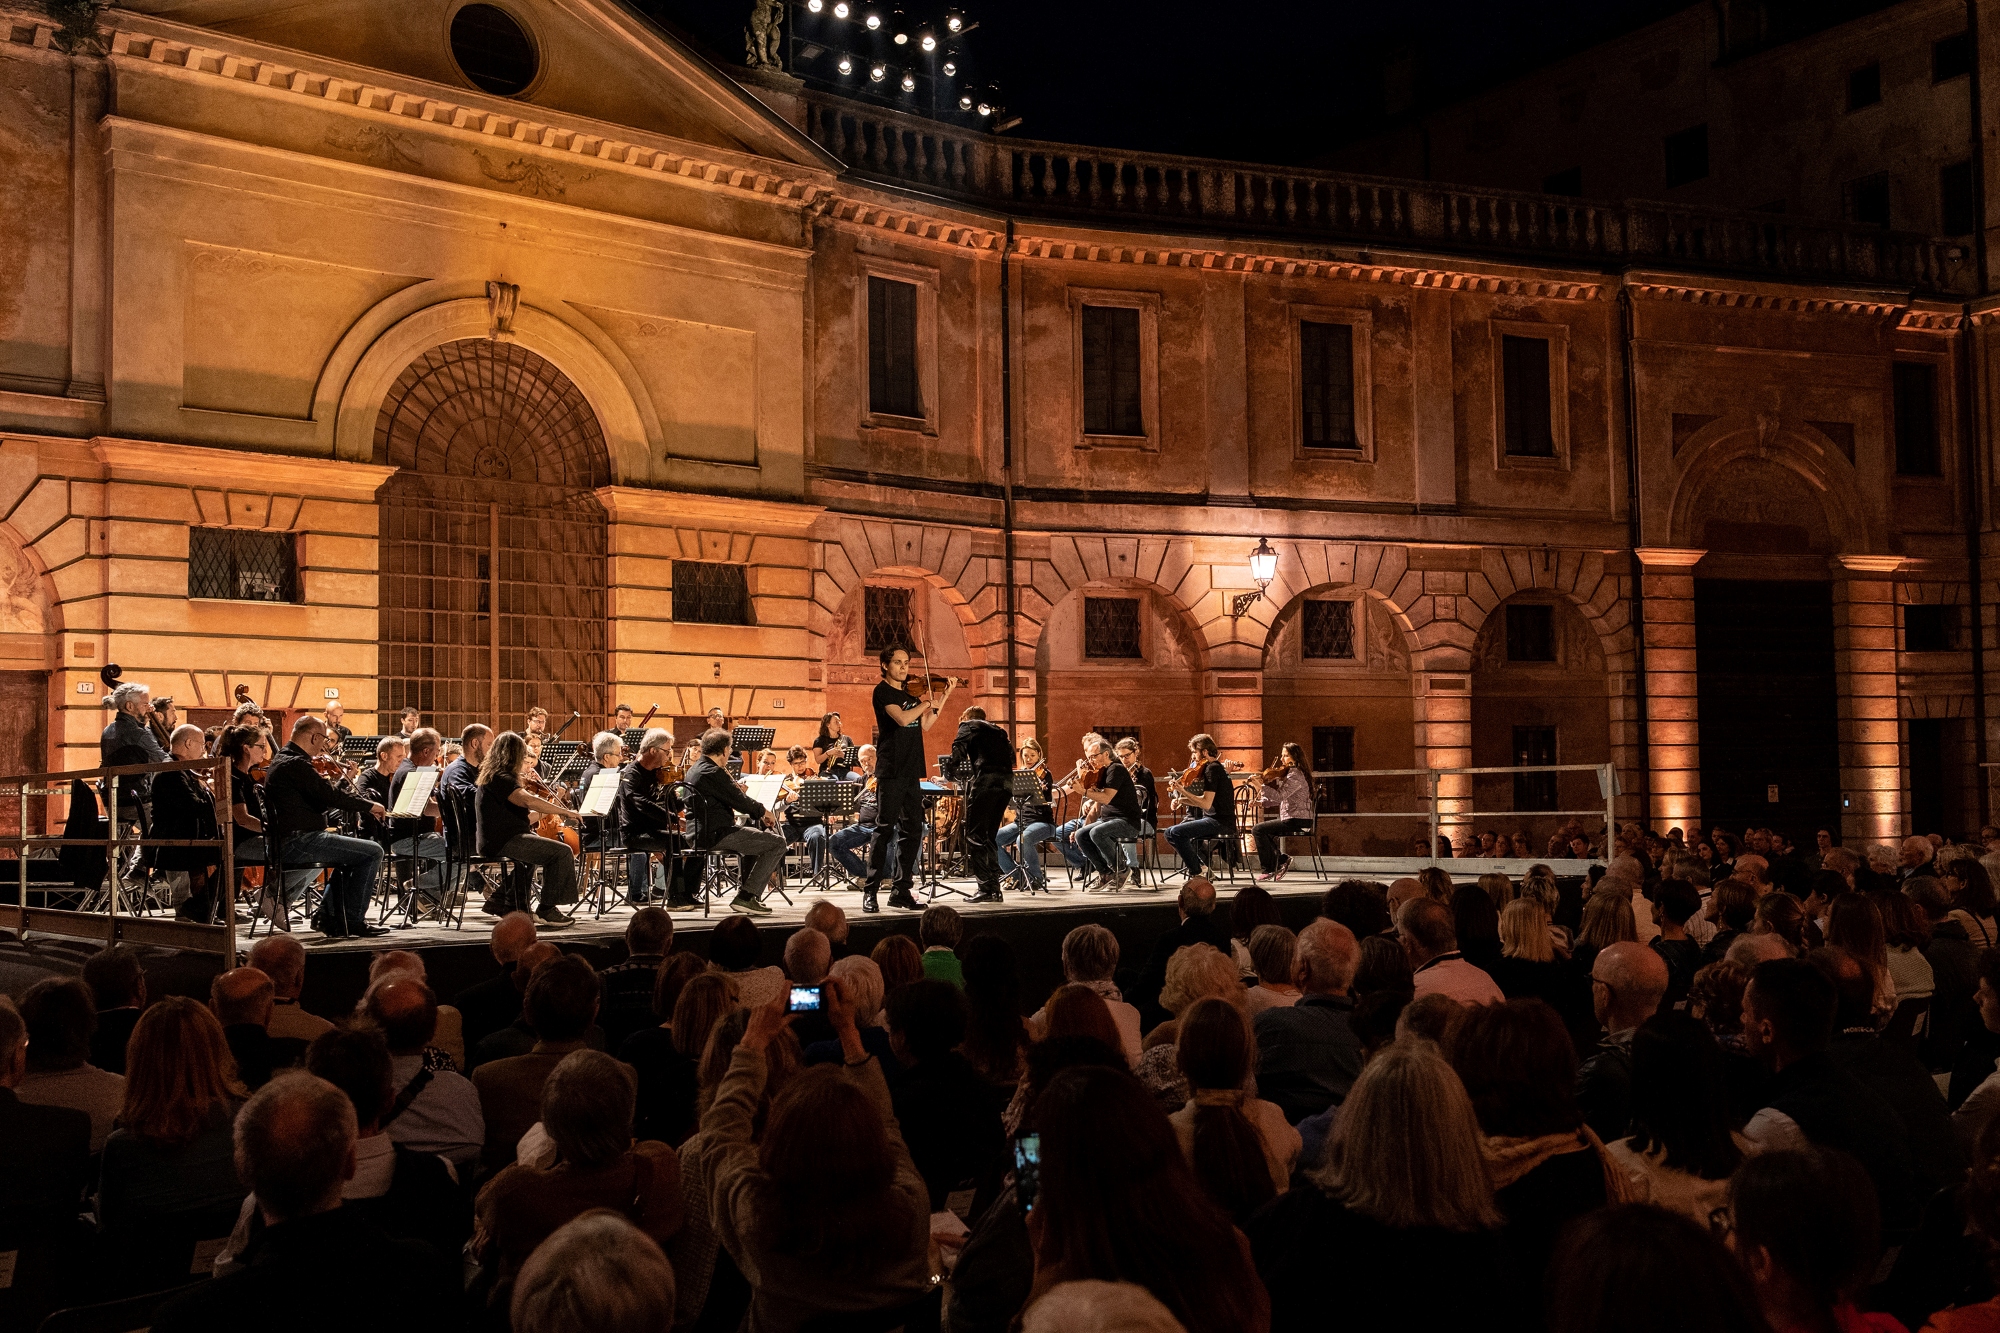 Orchestra da Camera di Mantova